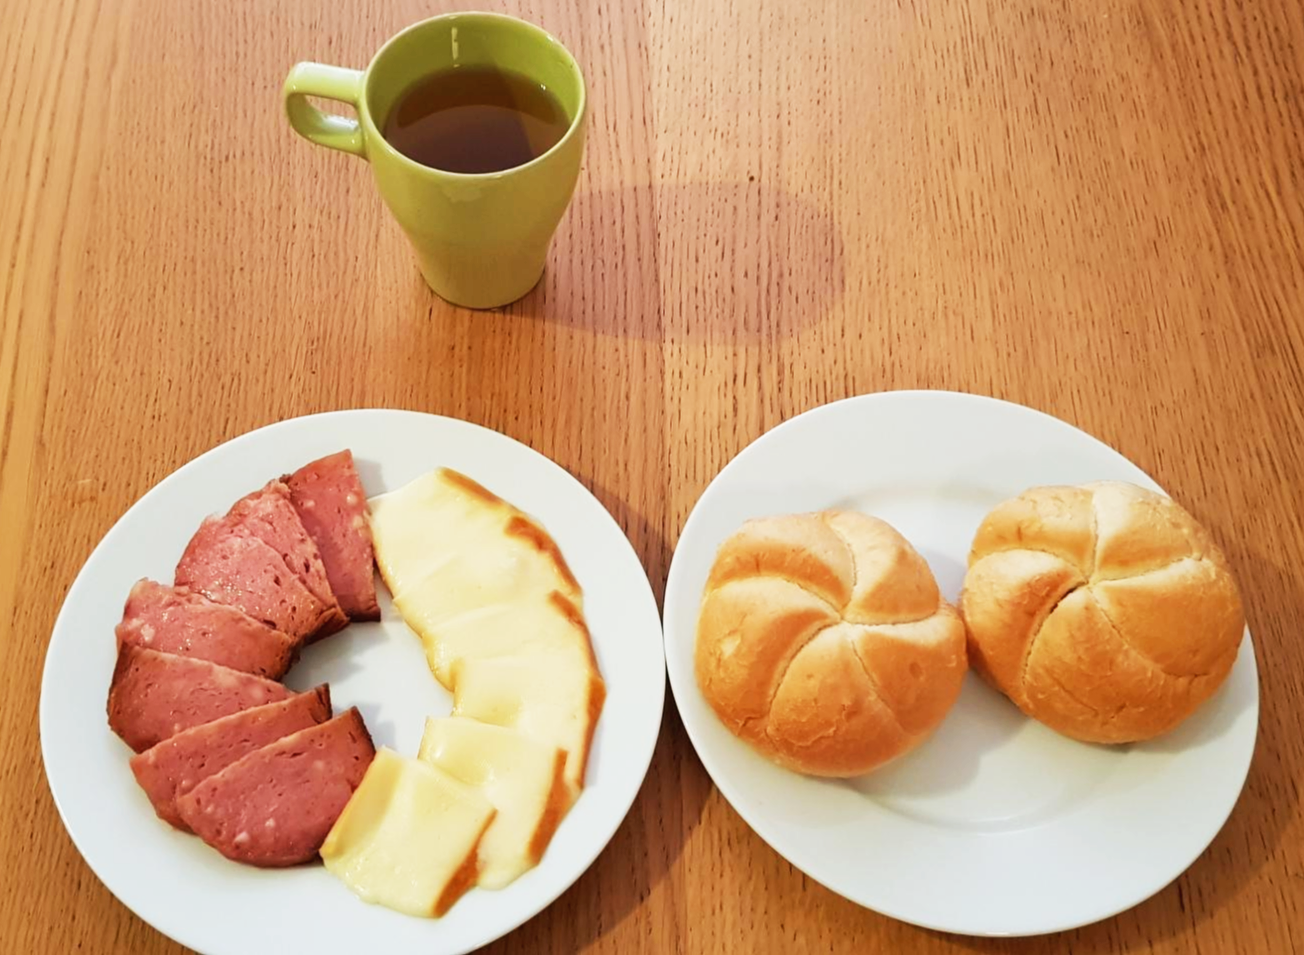 프라하에서의 아침식사